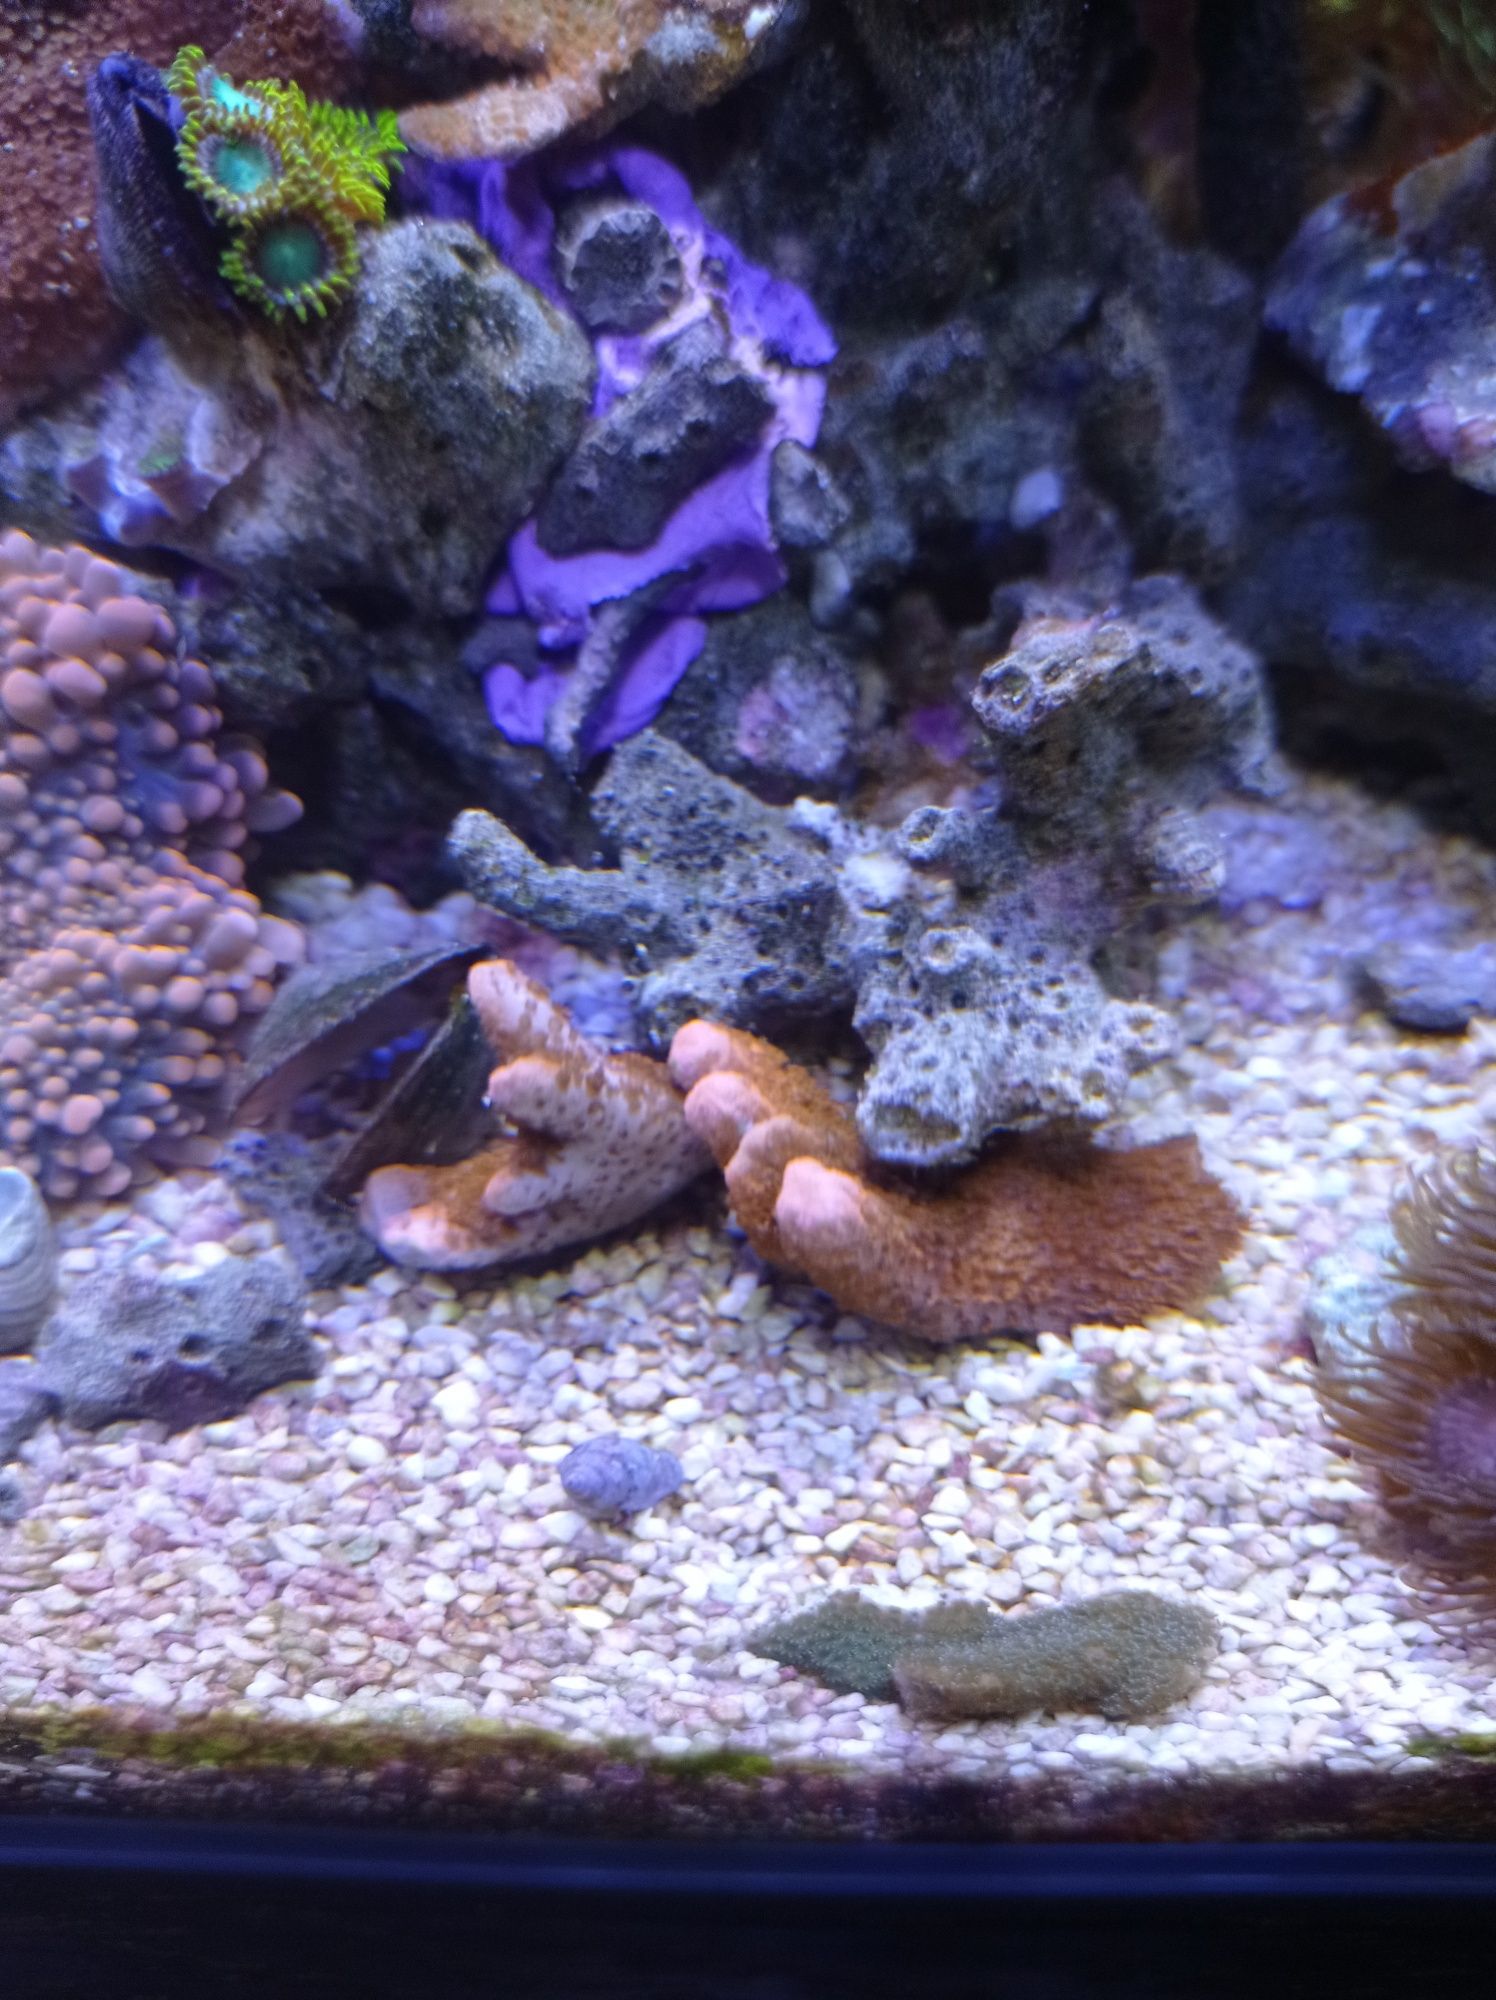 Montipora czerwona fluo FLUO, koralowiec miękki, akwarium morskie.